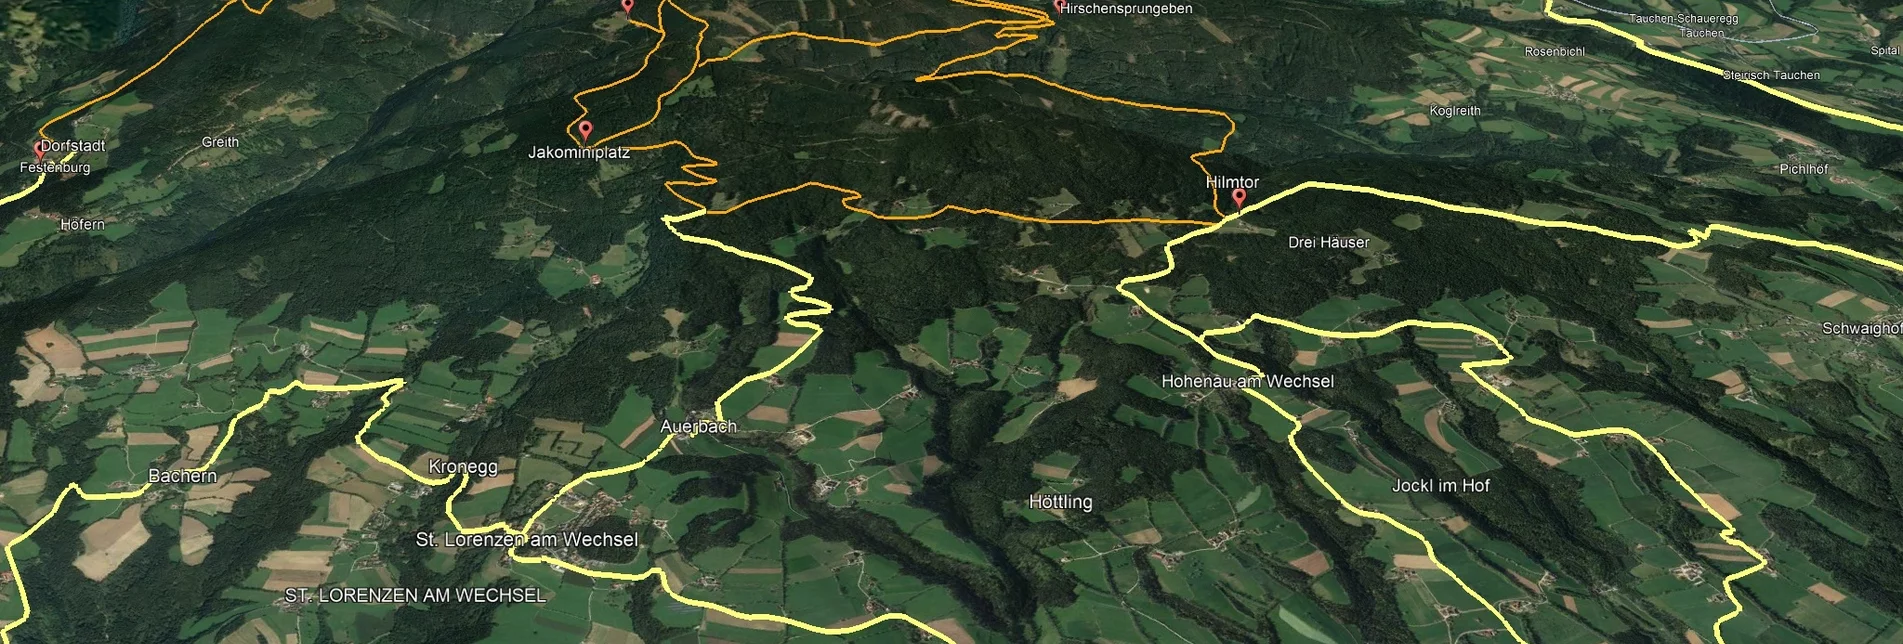 Mountain Biking PREVIEW Styrian Wexl Trails - Thalberg feeder road to St. Lorenzen am Wechsel (connection) - Touren-Impression #1 | © Verein Tourismusentwicklung Steirischer Wechsel